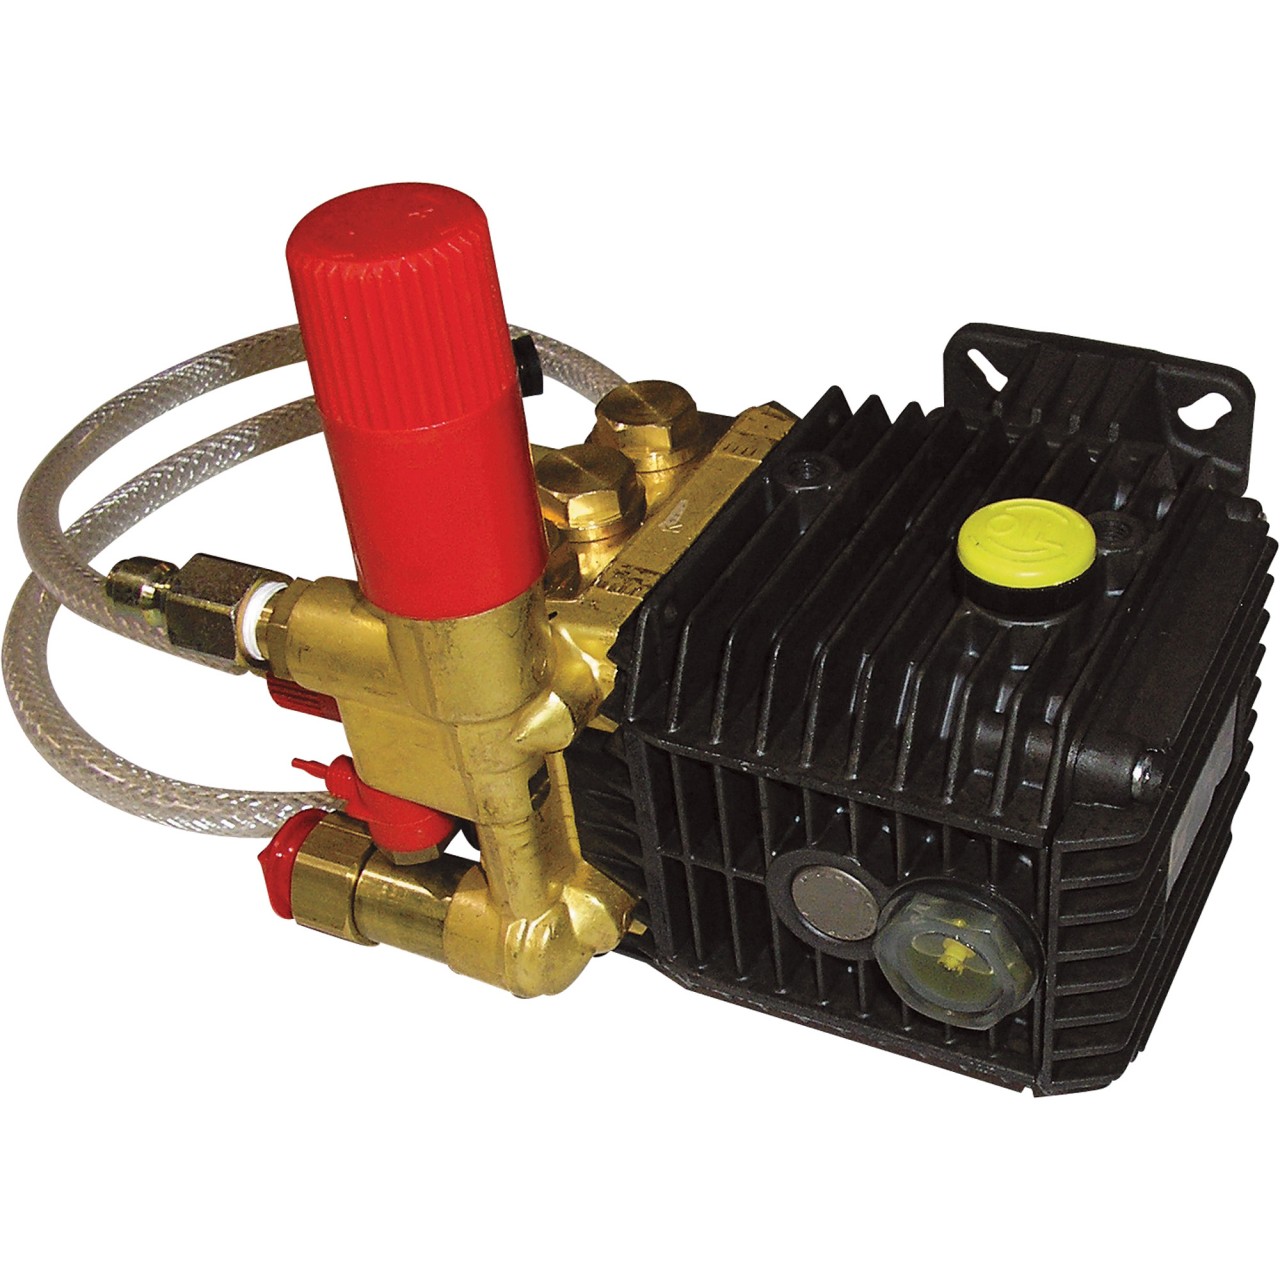 3.0 GPM@2500 PSI 3400 General Pump SLPTP2530-401 Pressure Washer Pump Triplex 